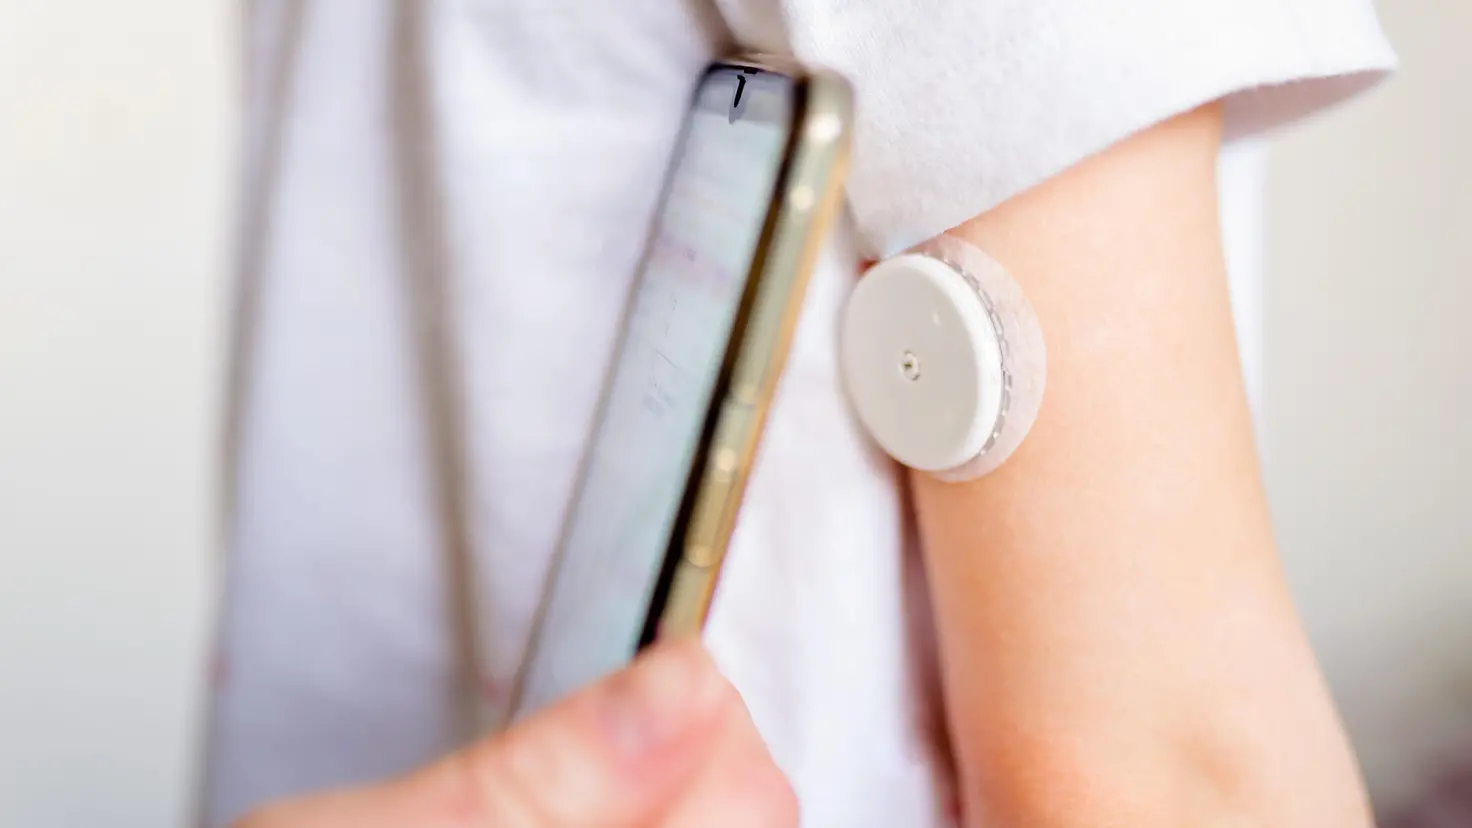 Blutzuckermessung am Arm mit kontinuierlichem Glukosemess-System und Smartphone